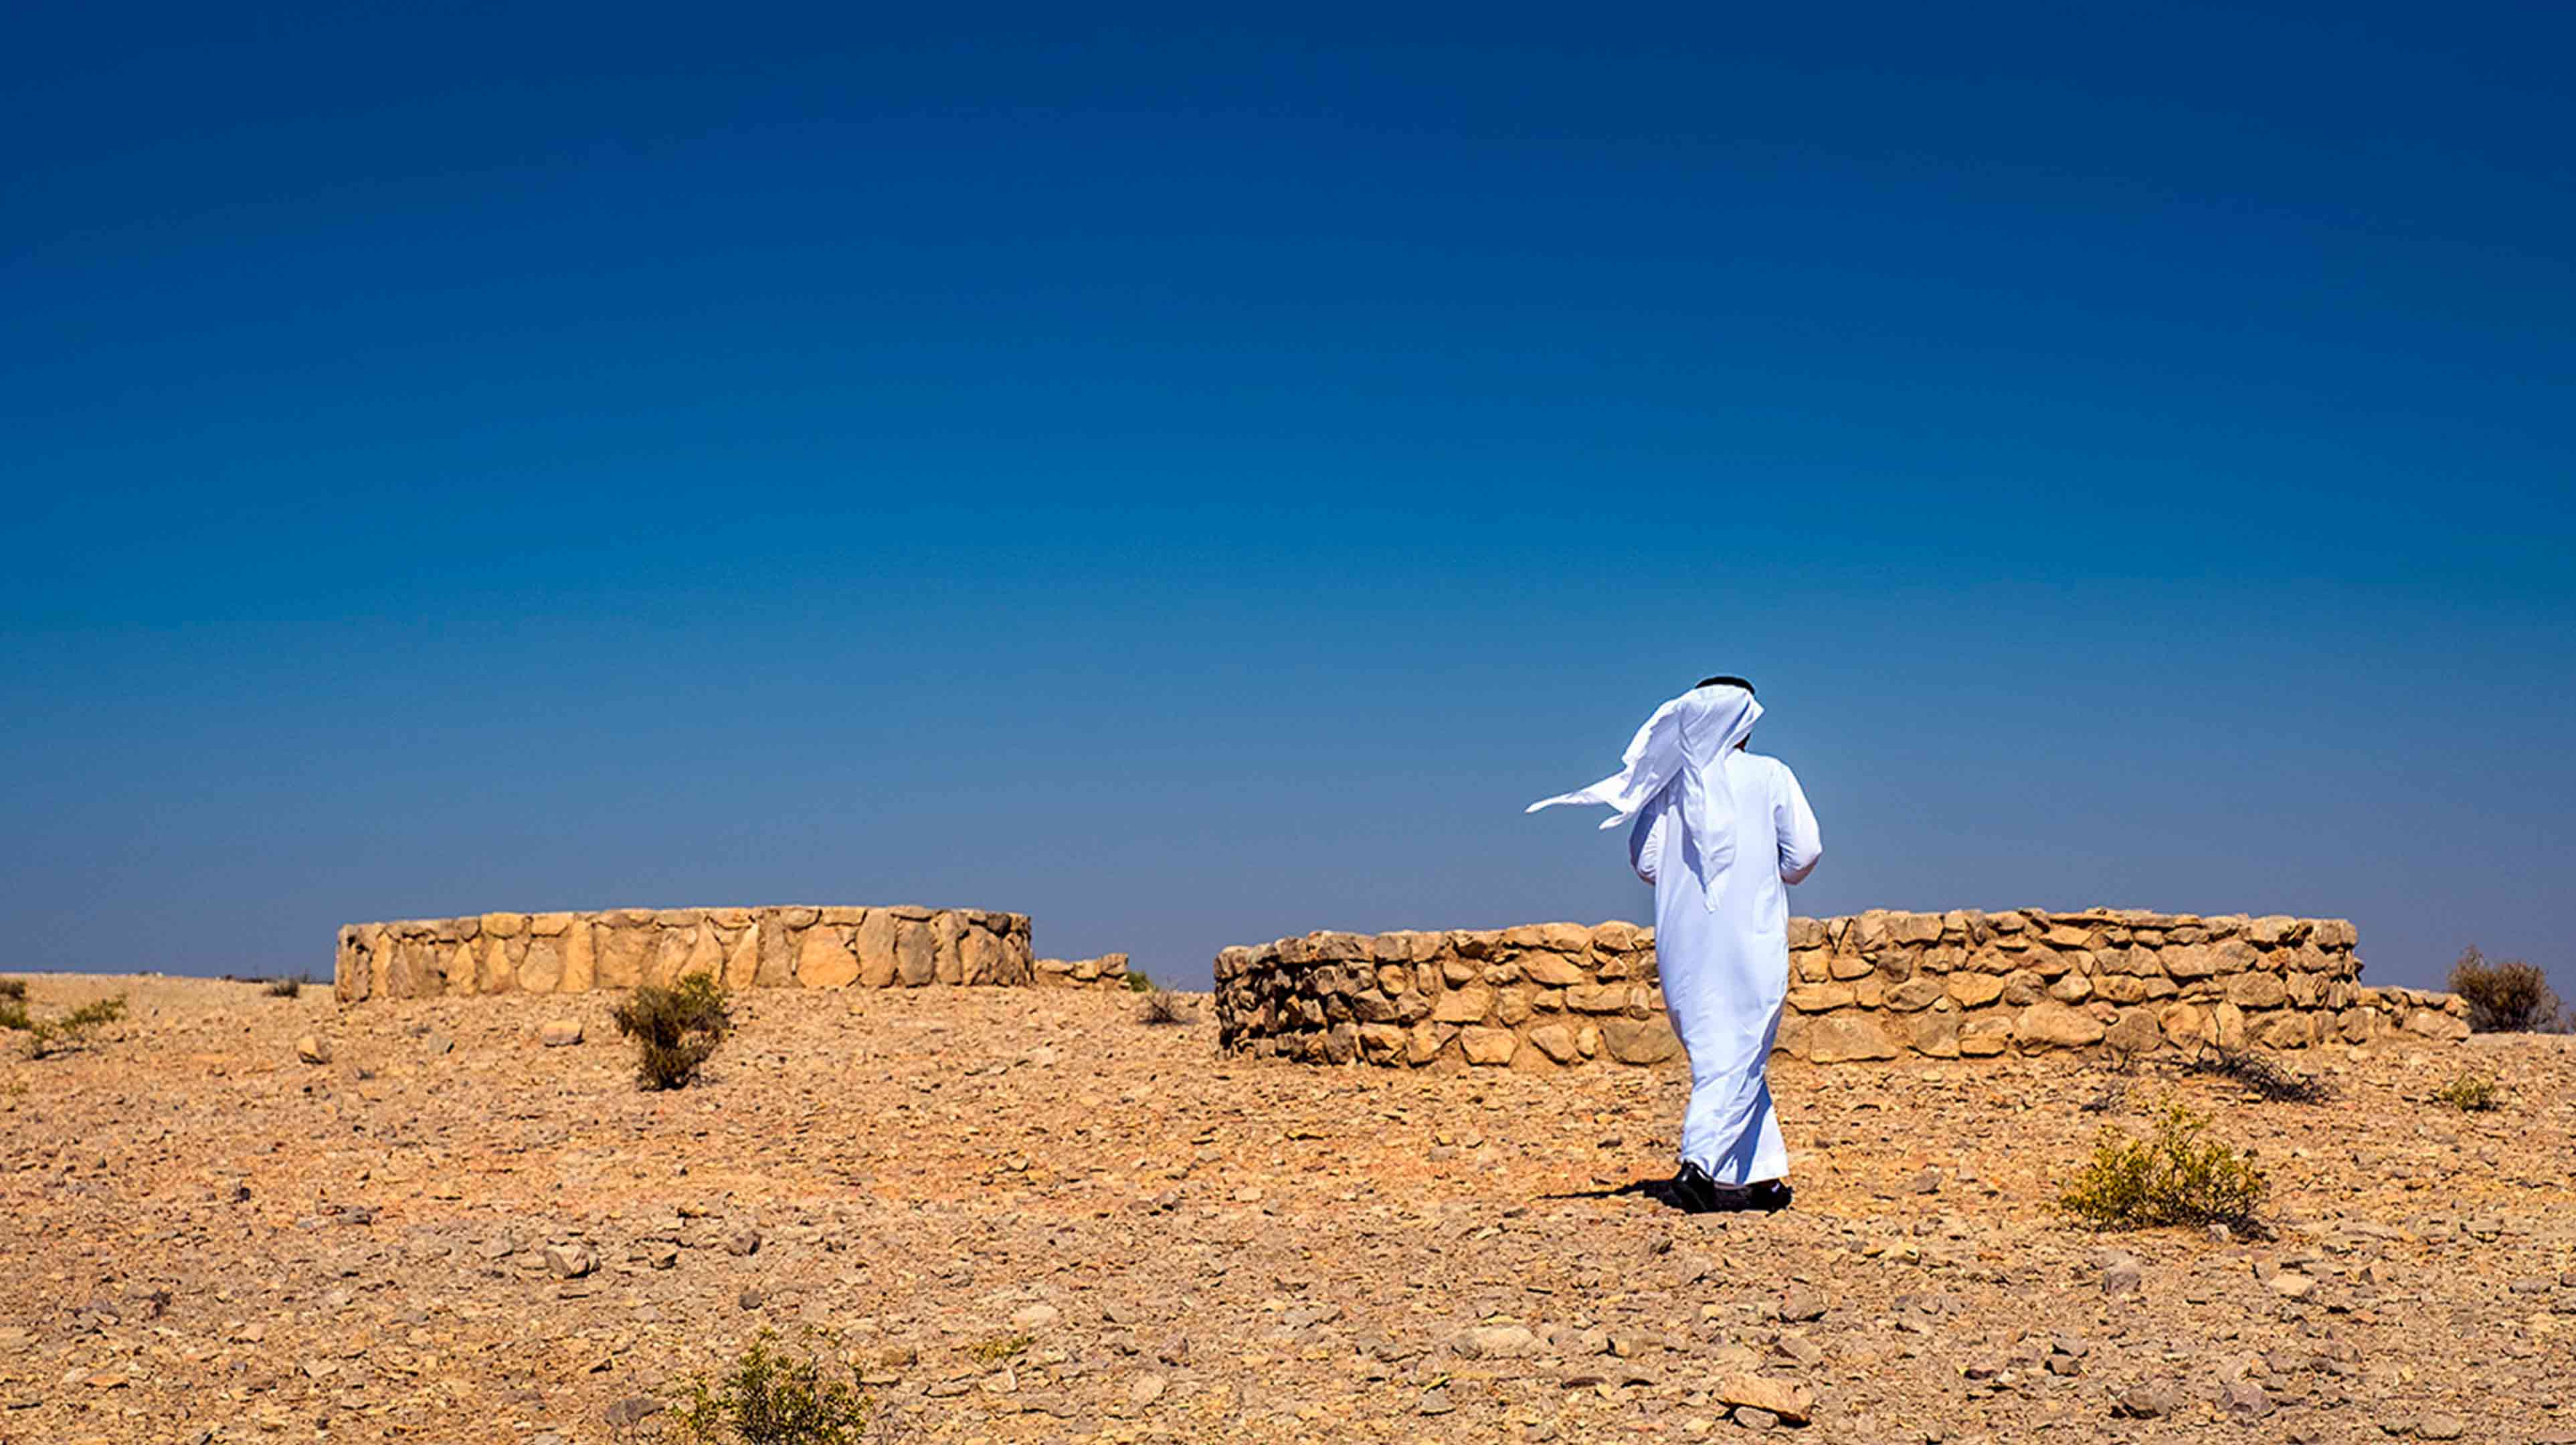 Emirati man exploring Bidaa Bint Saud, one of the UNESCO World Heritage sites in Abu Dhabi